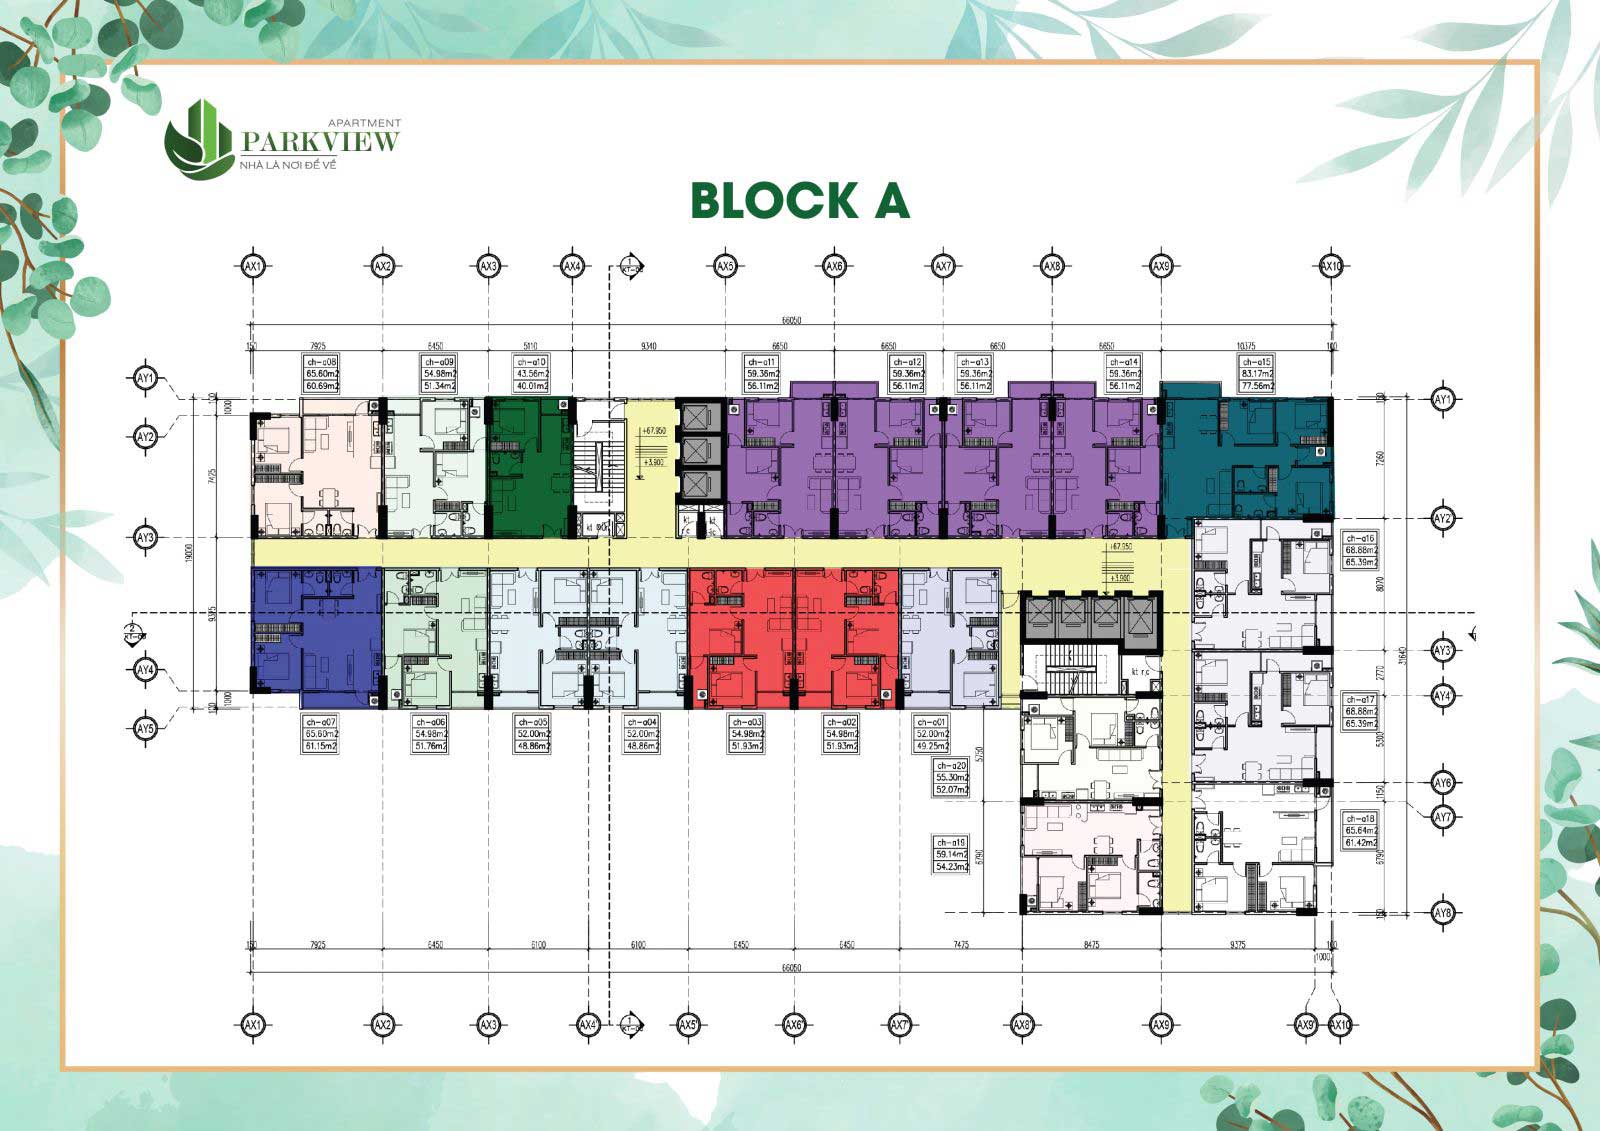 Thiết kế căn hộ Parkview Bình Dương - Block A